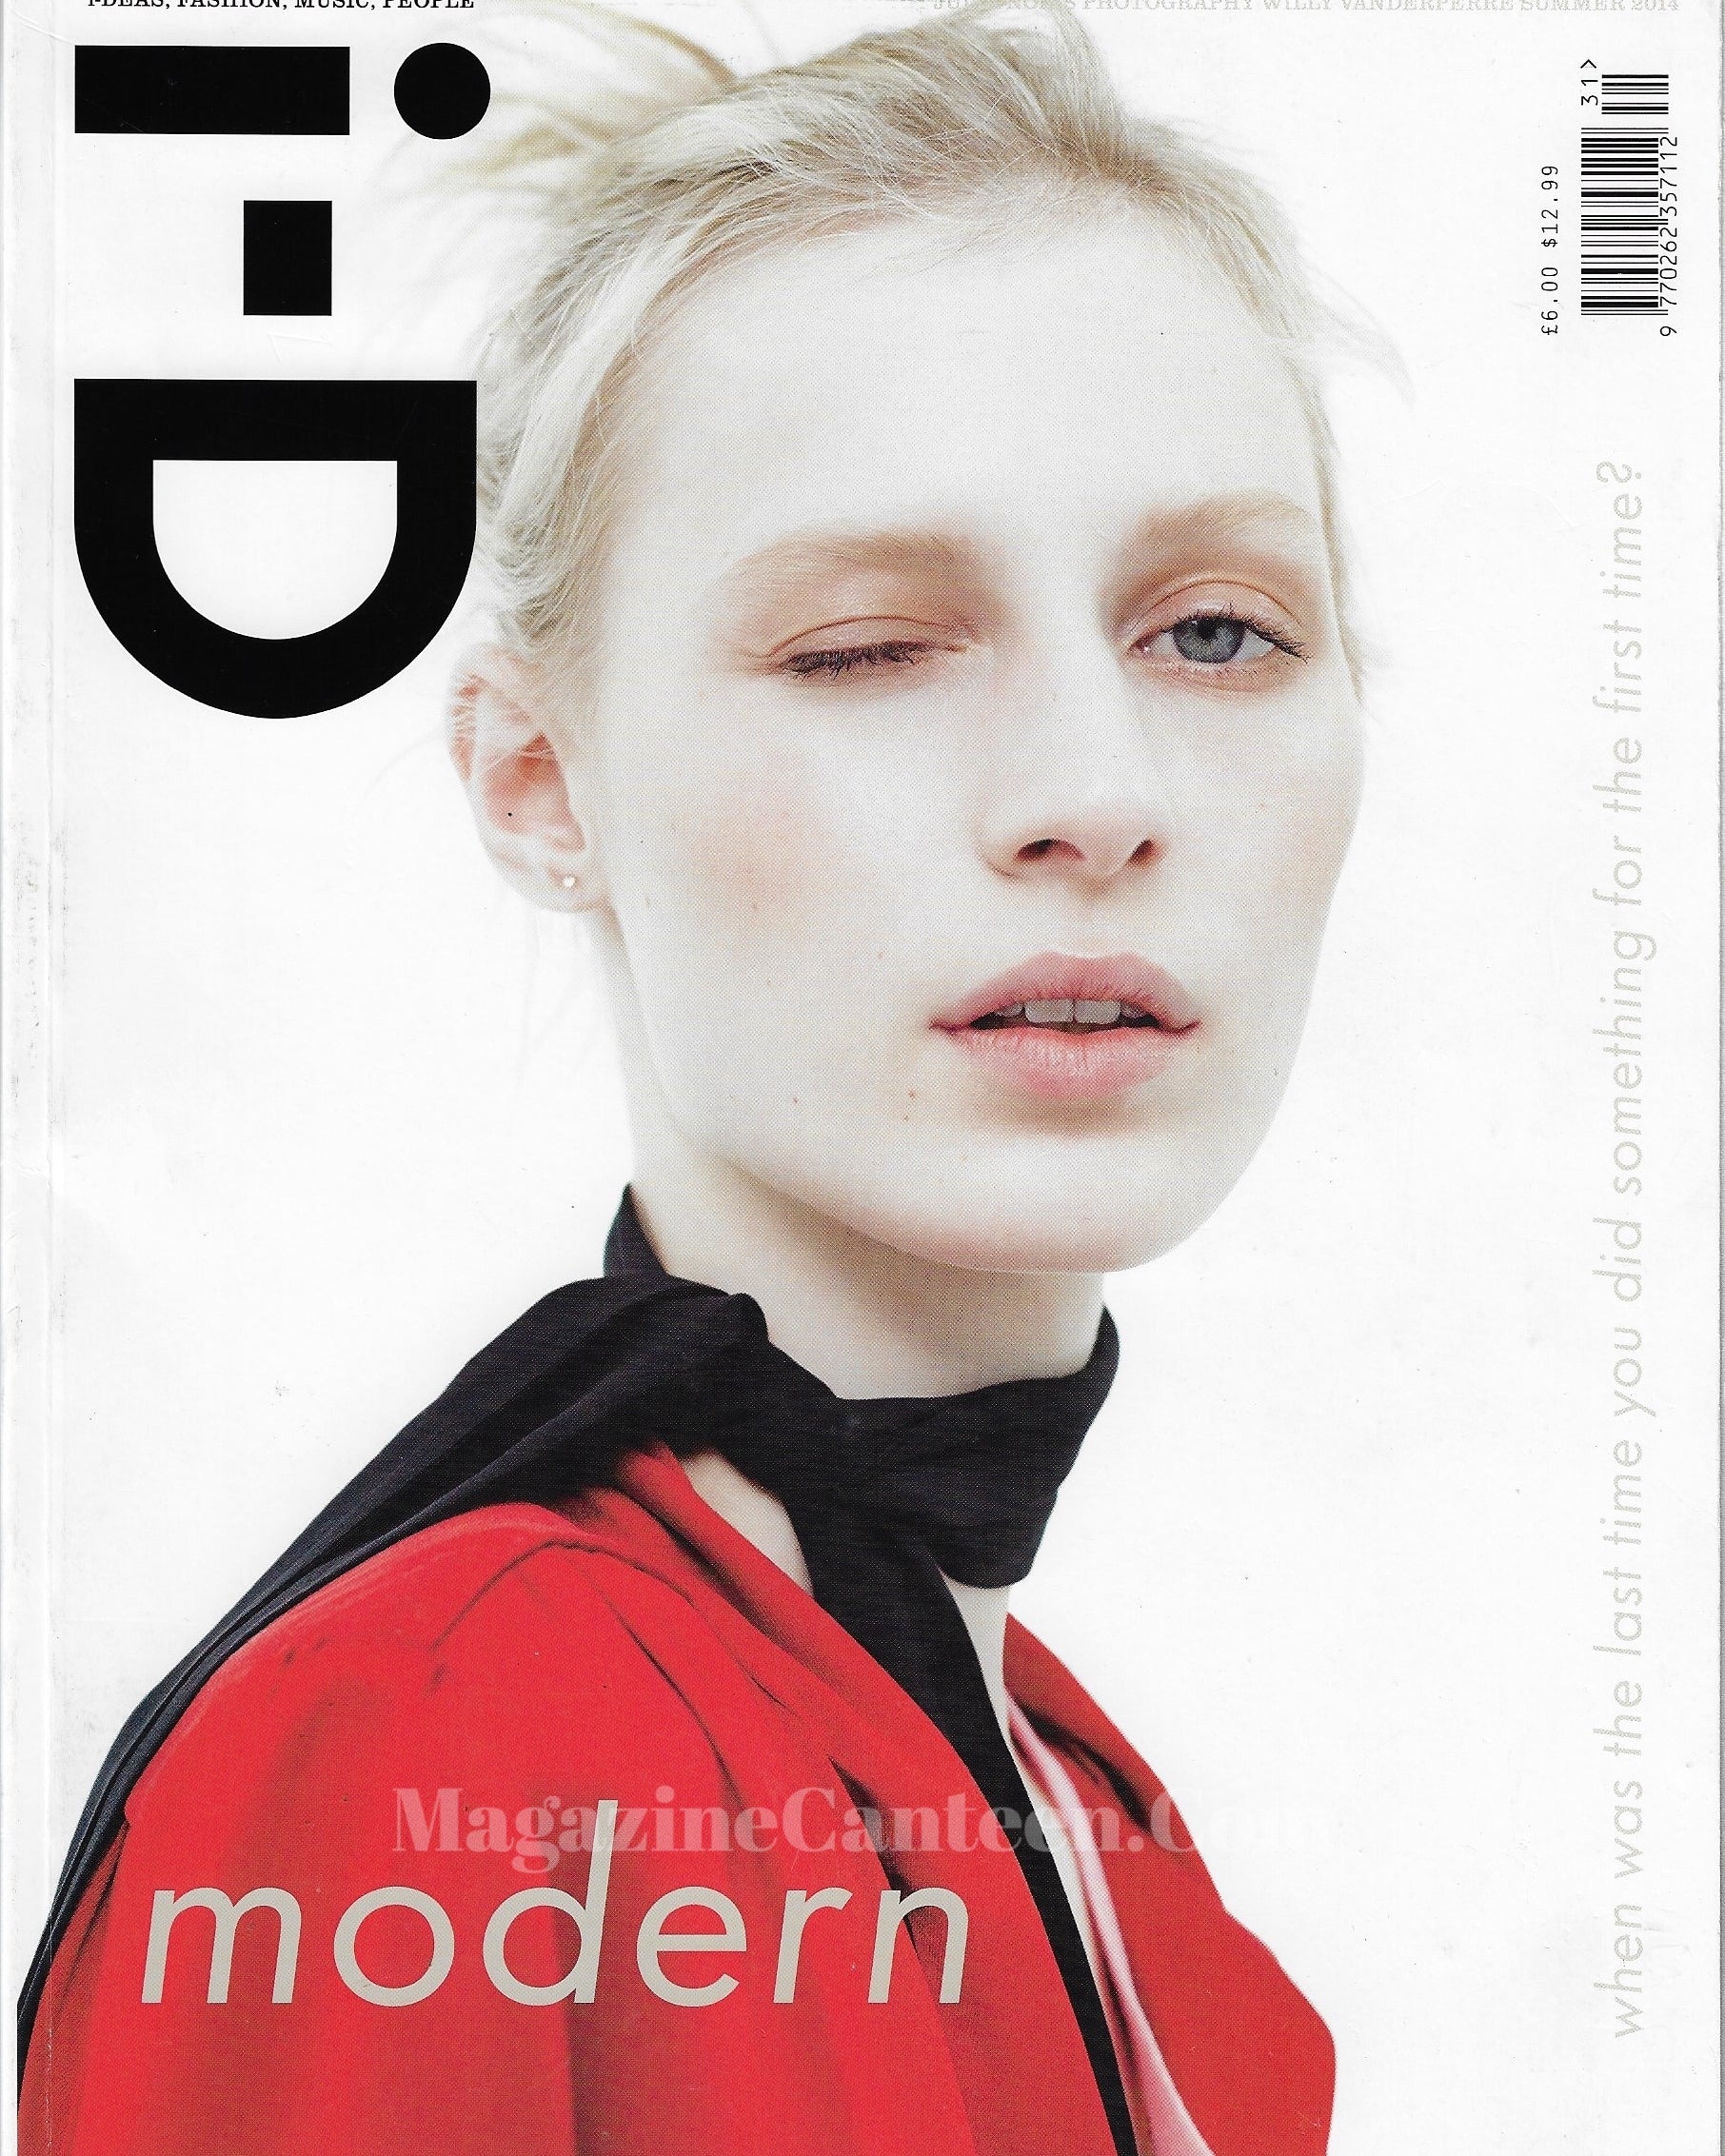 I-D Magazine 331 - Julia Nobis 2014